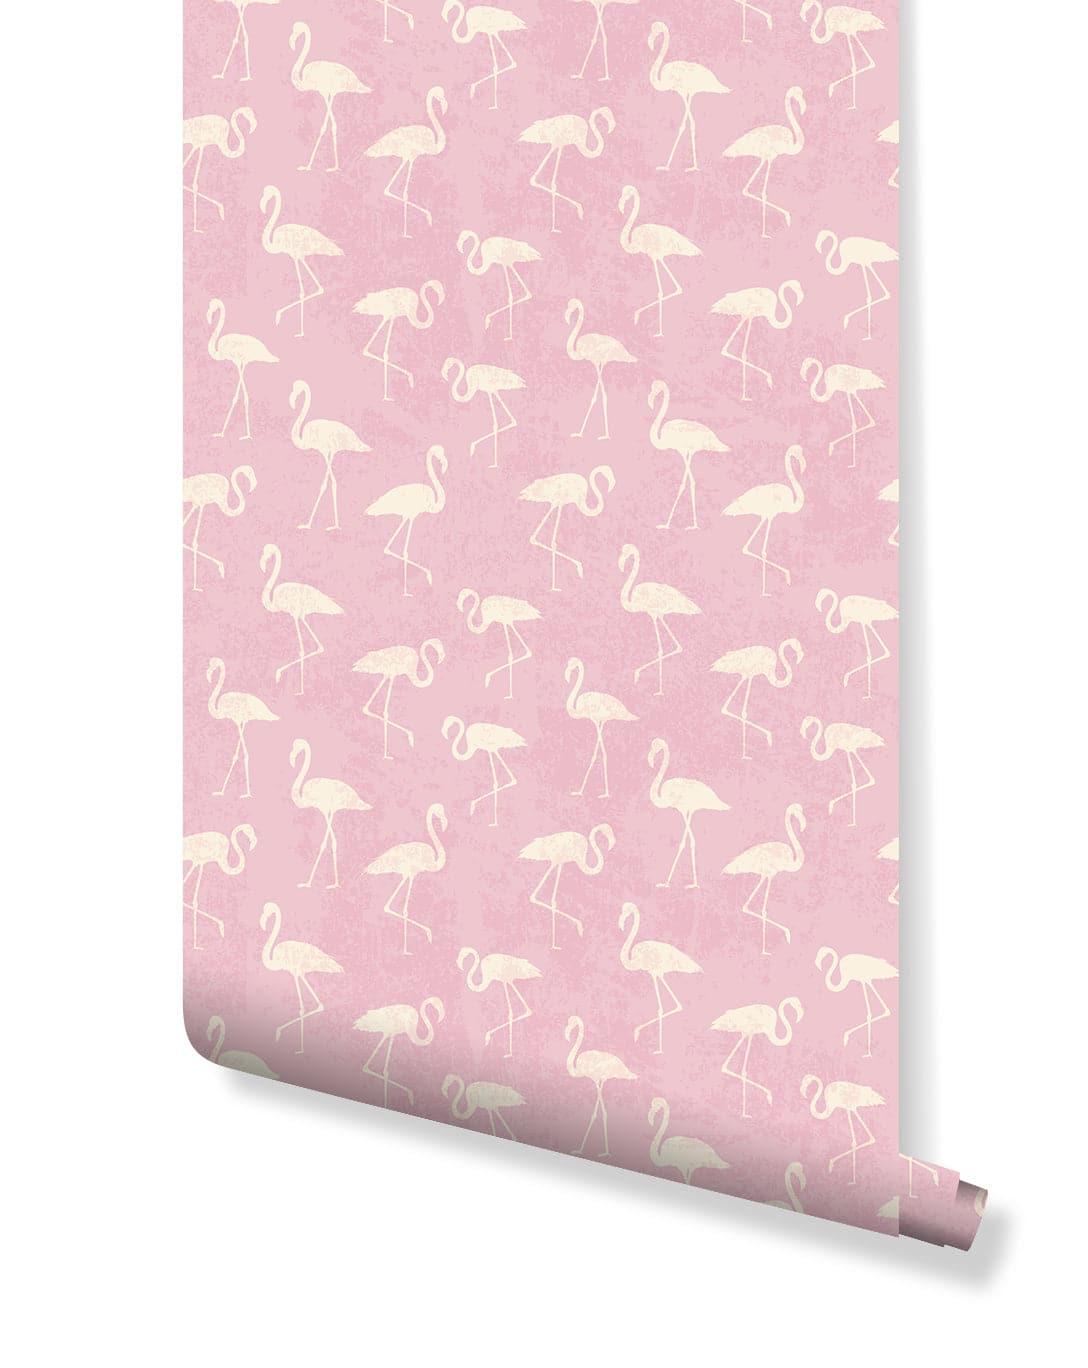 Retro Tropical Pink Flamingos Removable Wallpaper Retro Tropical Pink Flamingos Removable Wallpaper 